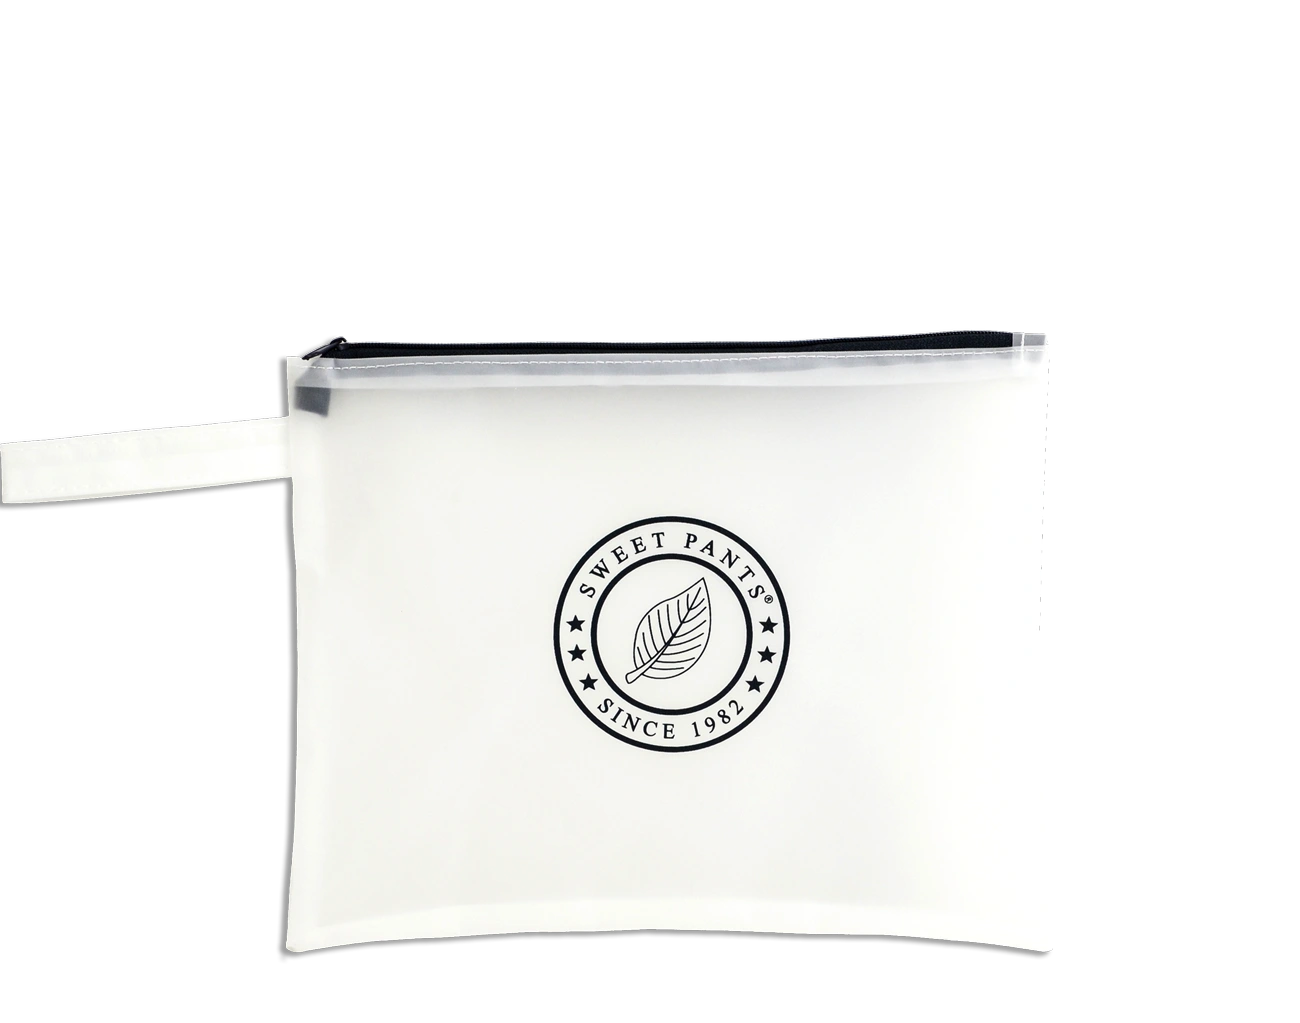 Découvrez et appréciez cette jolie Trousse Personnalisée avec Système de Fermeture Éclair et impression extérieure du logo de la Marque sur 1 face du Packaging.